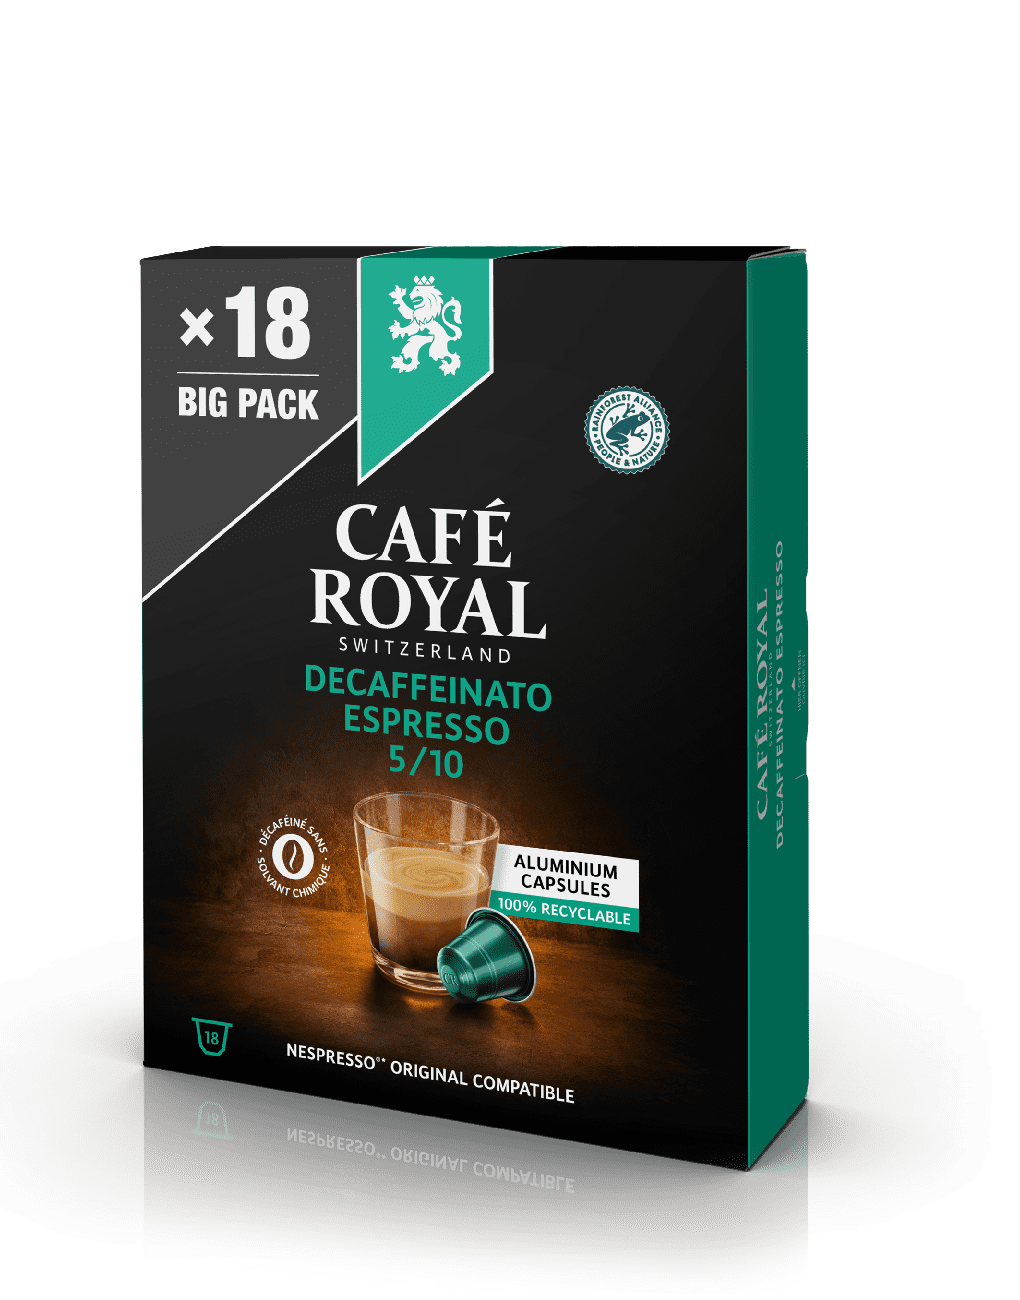 Café Royal Espresso Decaffeinato 18 Capsules